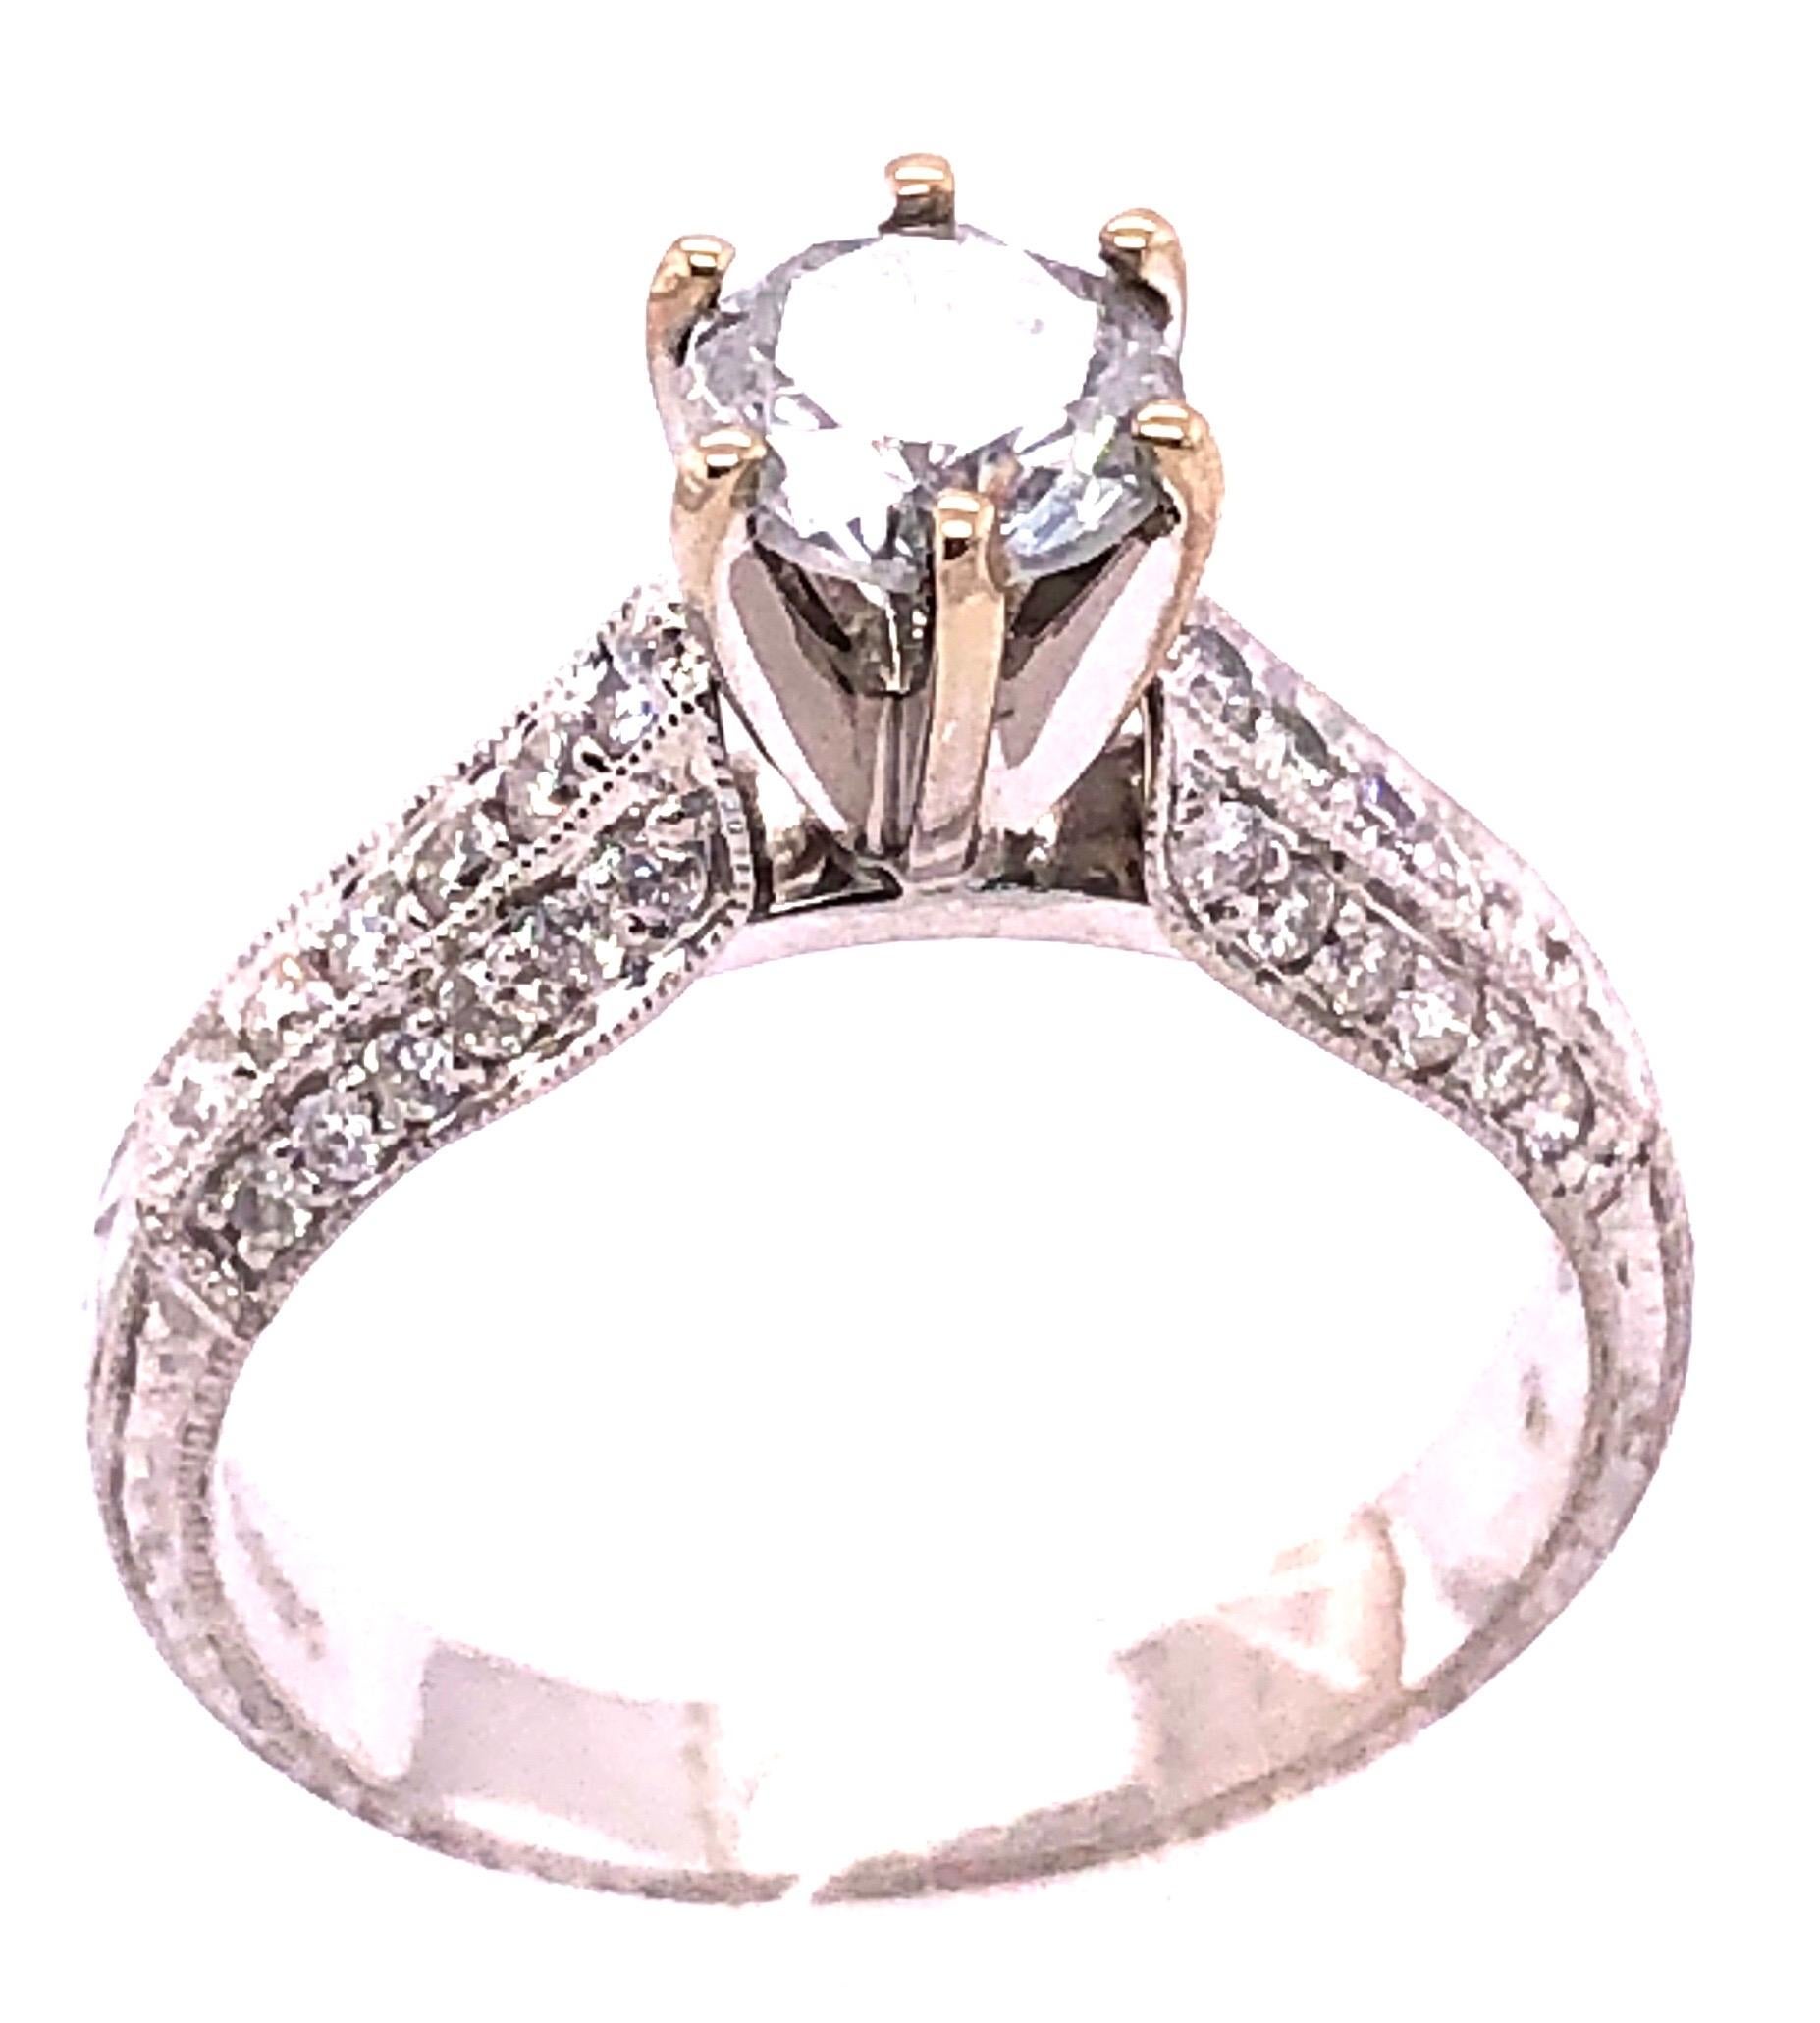 18 Karat Weißgold Diamant Verlobungsring 1,40 Gesamtgewicht der Diamanten.
Größe 6.75 
4,55 Gramm Gesamtgewicht.